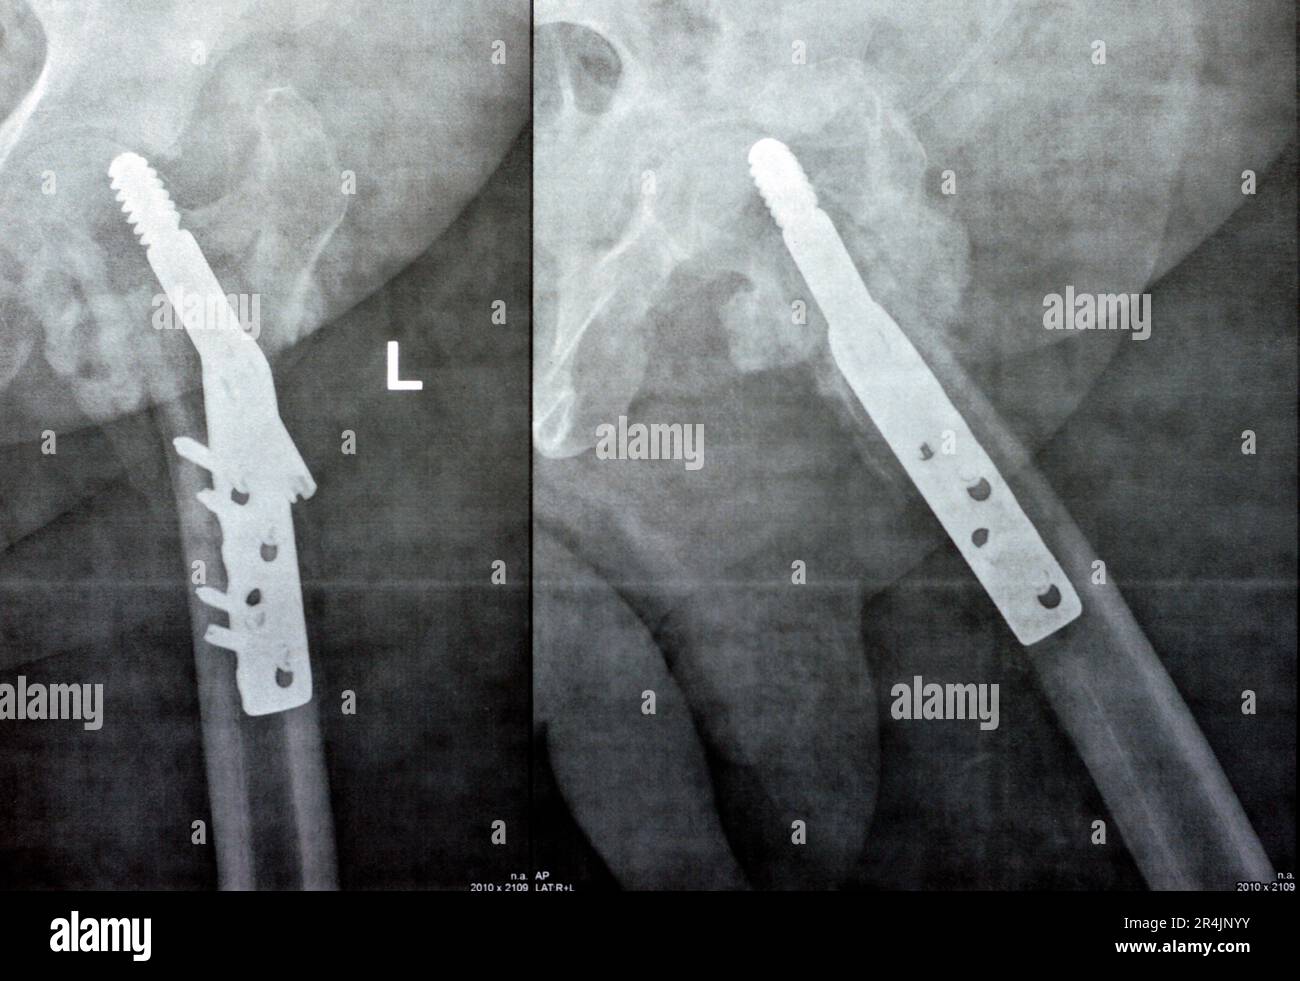 Collo cervicale trans dell'anca sinistra della frattura femorale fissato da DHS Dynamic Hip Screw, Plain x ray PXR di un vecchio paziente, una testa femorale-risparmiatore ortopedico Foto Stock